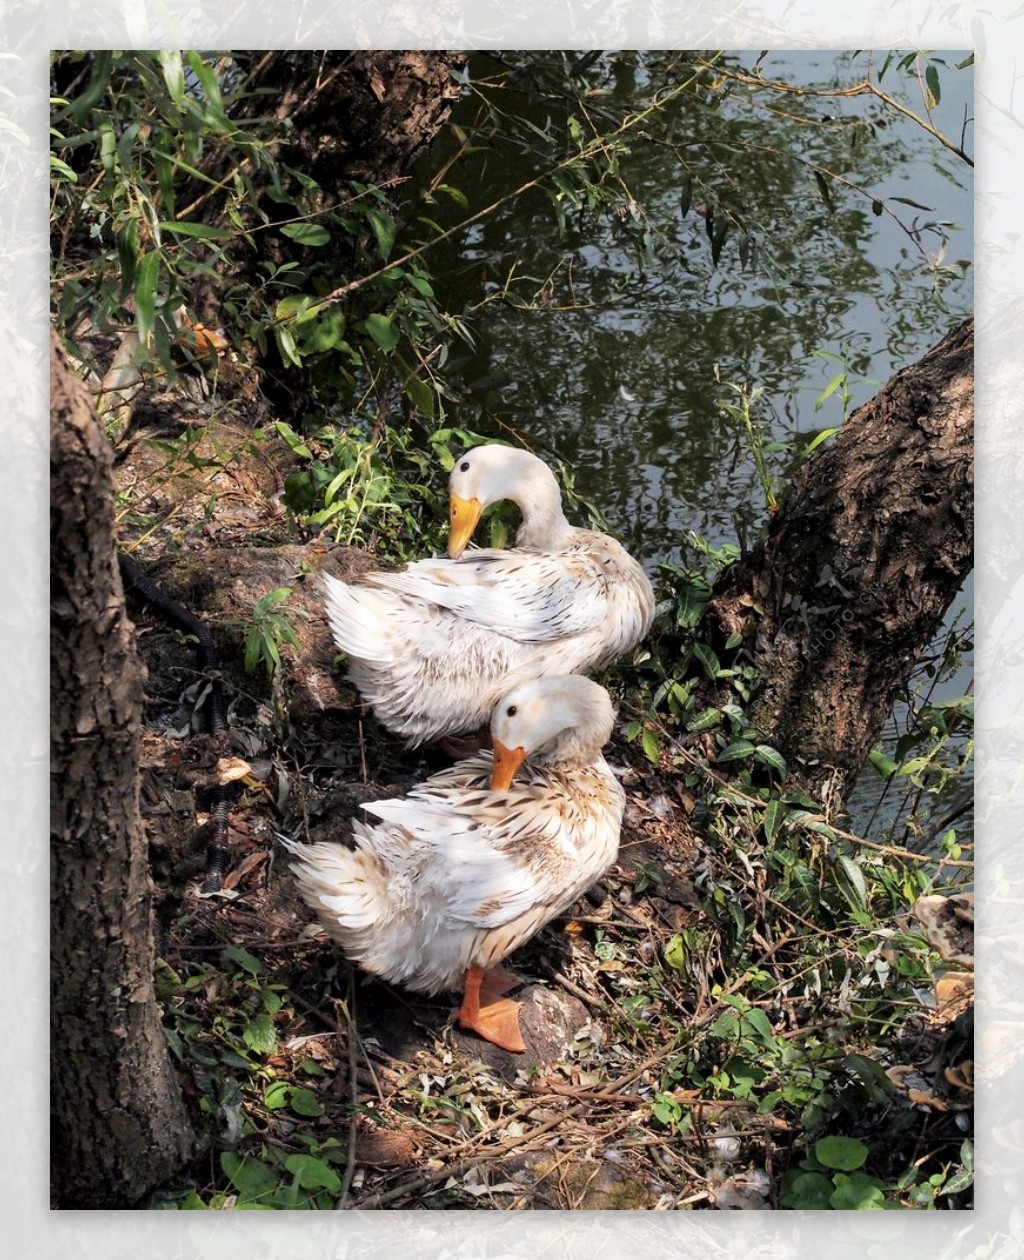 鸭子动物摄影图片-鸭子动物摄影作品-千库网